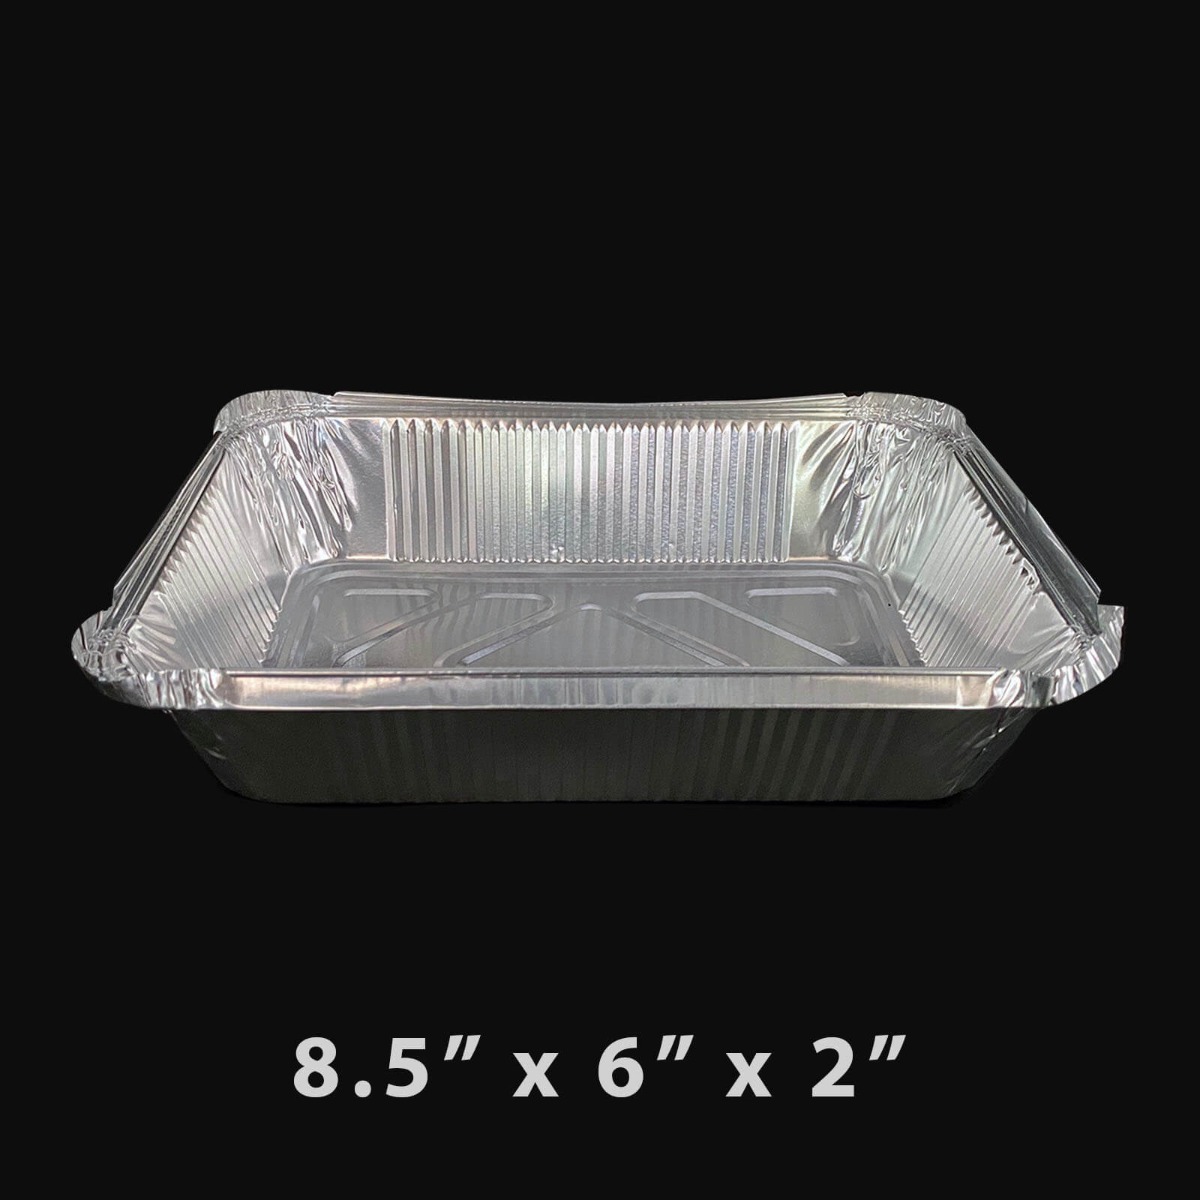 50 Packs Aluminum Foil Pans with Lids 8 x 6 Inch Disposable Foil Pans,  2.25lb Capacity Foil Food Containers with Lids,Disposable Cookware Tin Pans  for